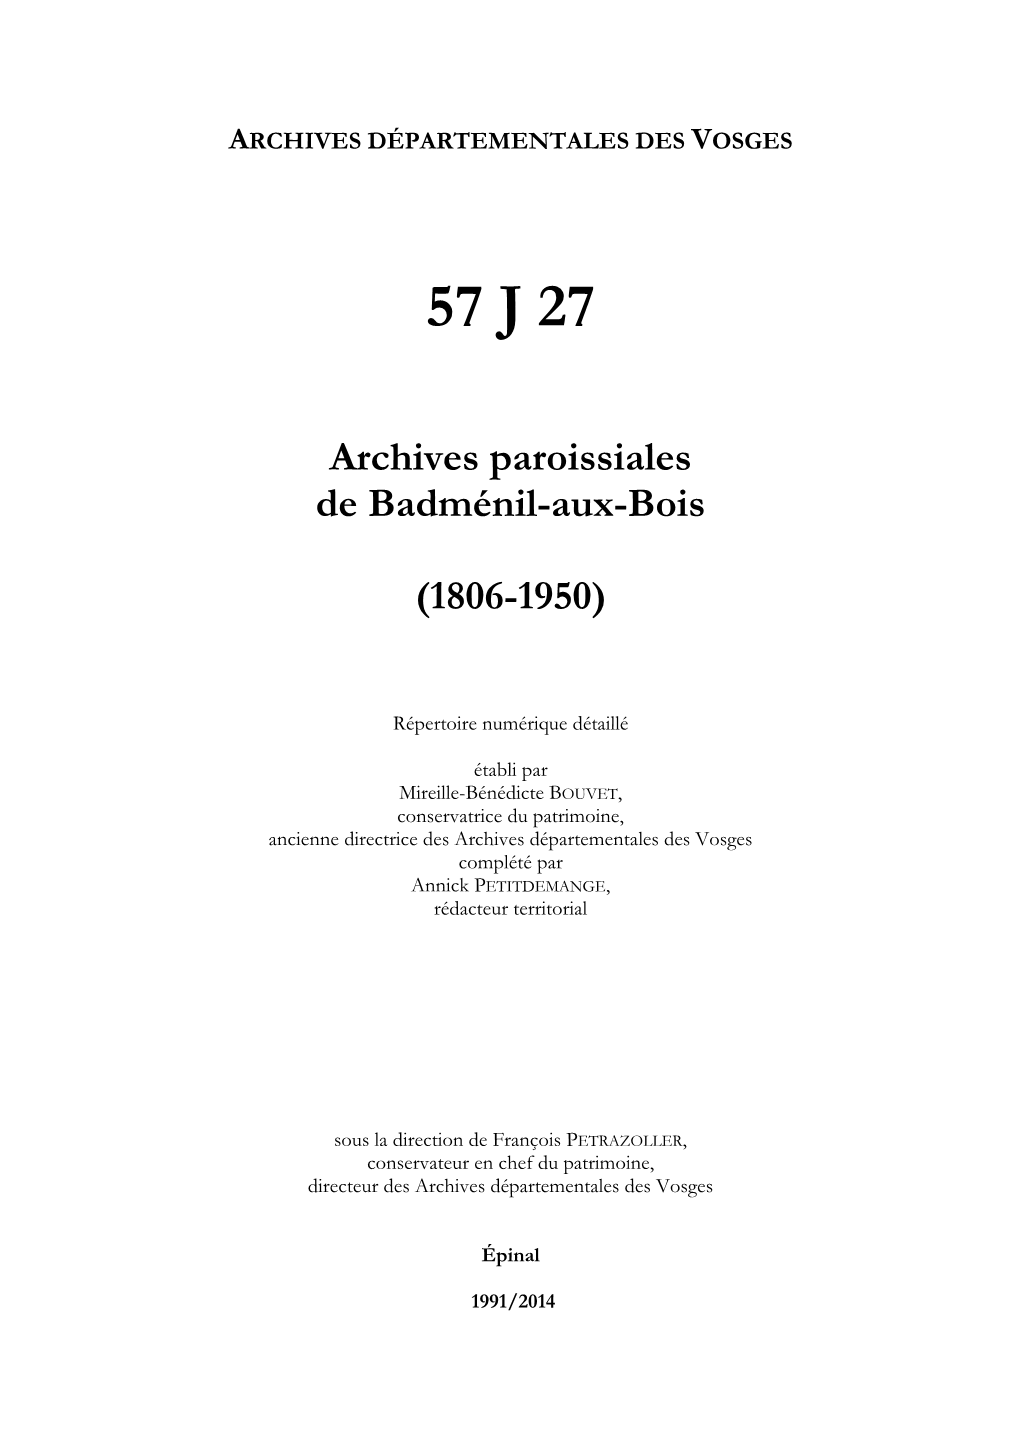 Archives De La Paroisse De Badménil-Aux-Bois.Pdf